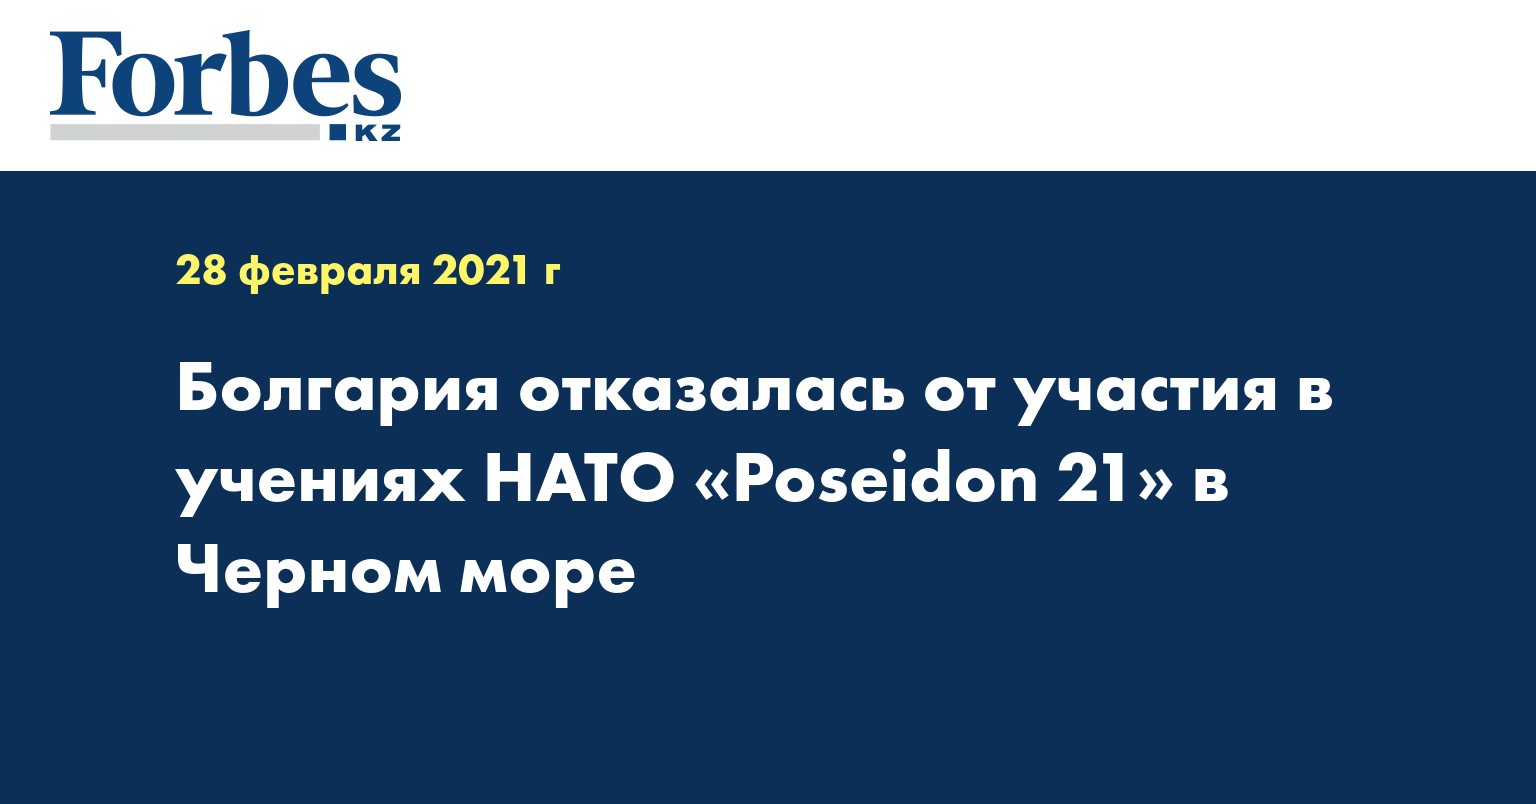 Болгария отказалась от участия в учениях НАТО «Poseidon 21» в Черном море